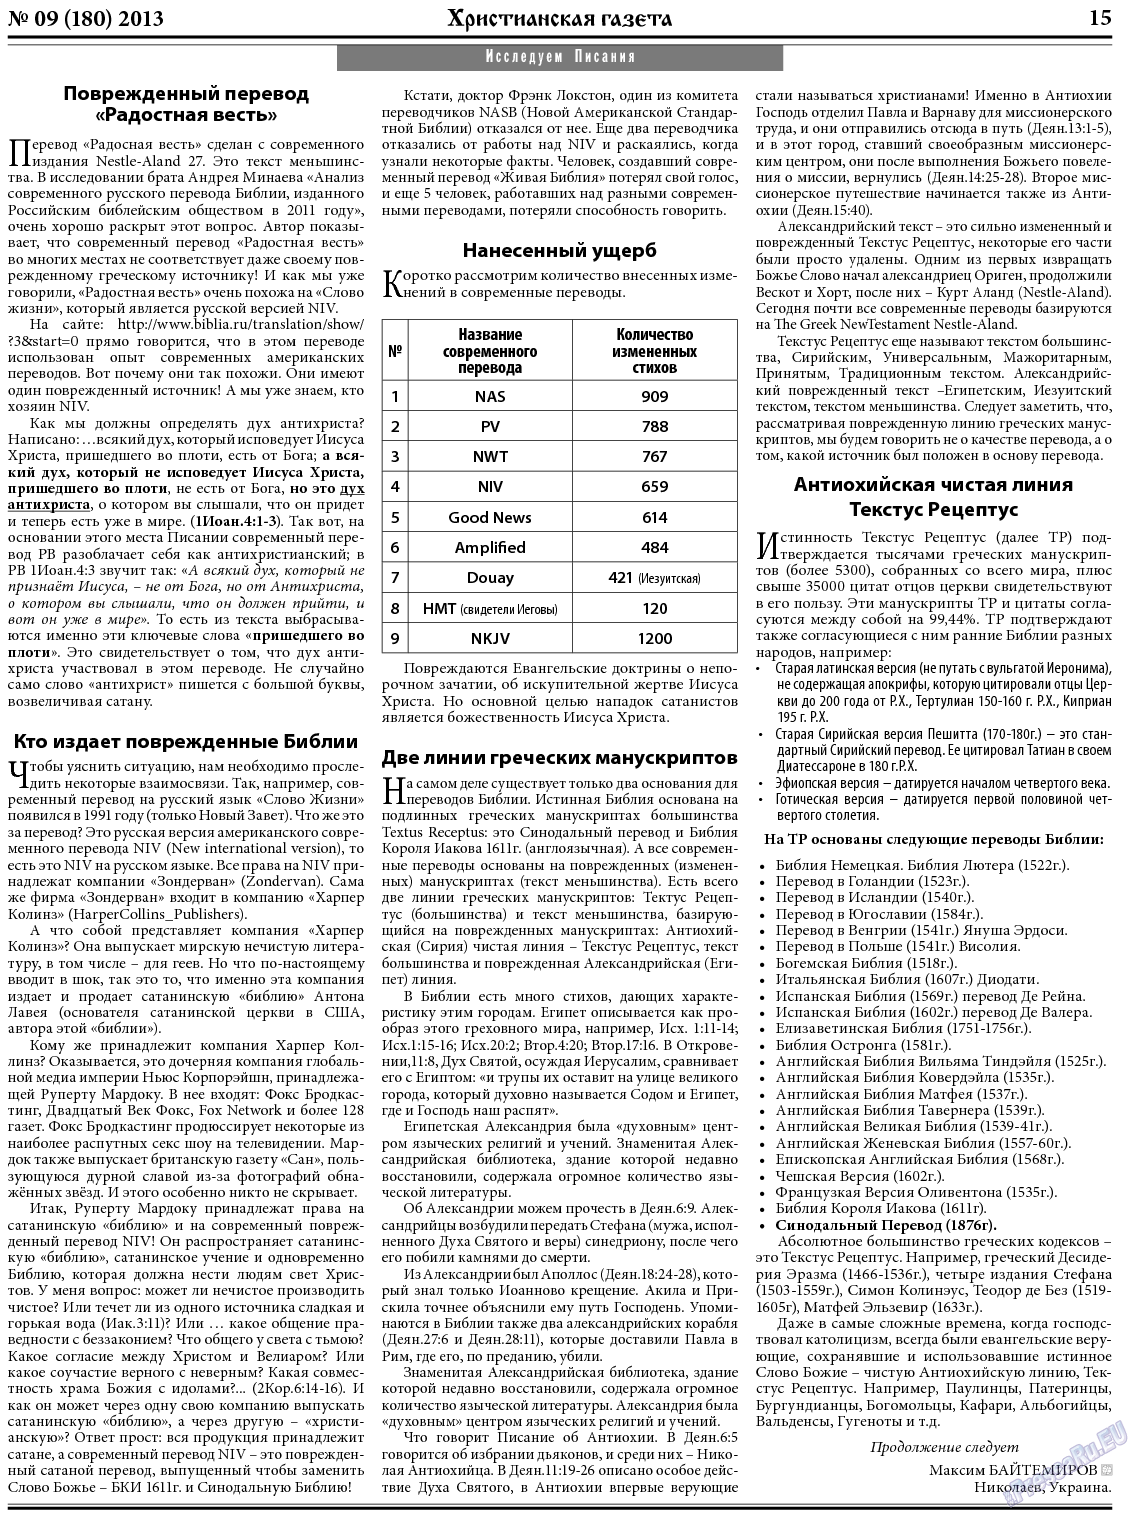 Христианская газета, газета. 2013 №9 стр.23